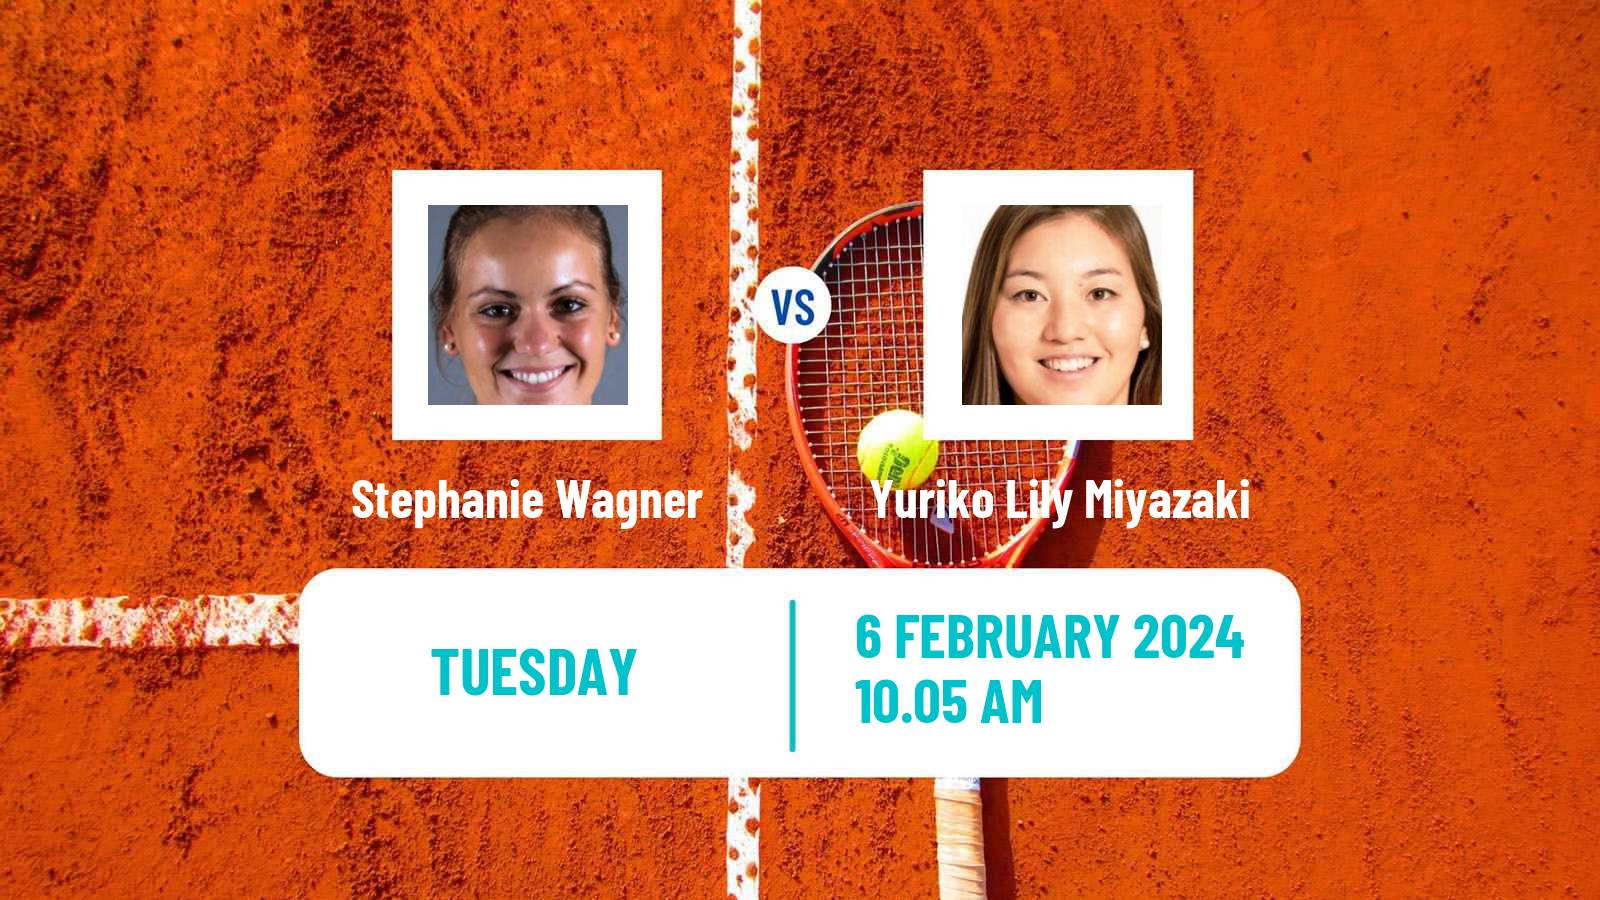 Tennis ITF W50 Edgbaston Women Stephanie Wagner - Yuriko Lily Miyazaki